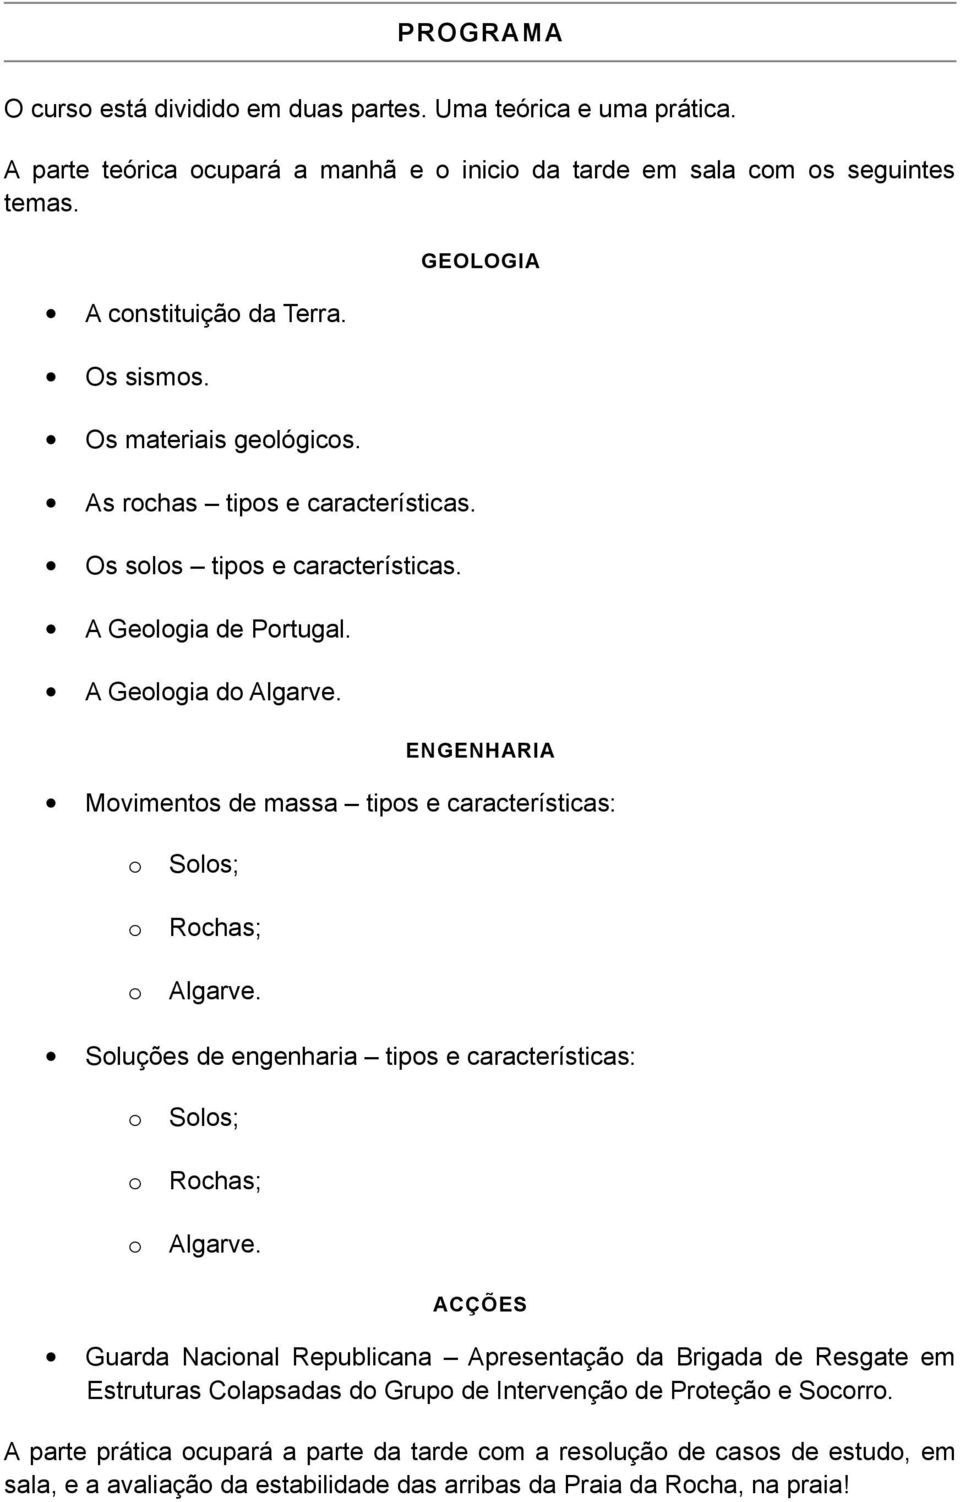 GEOLOGIA ENGENHARIA Mviments de massa tips e características: Sls; Rchas; Algarve. Sluções de engenharia tips e características: Sls; Rchas; Algarve.